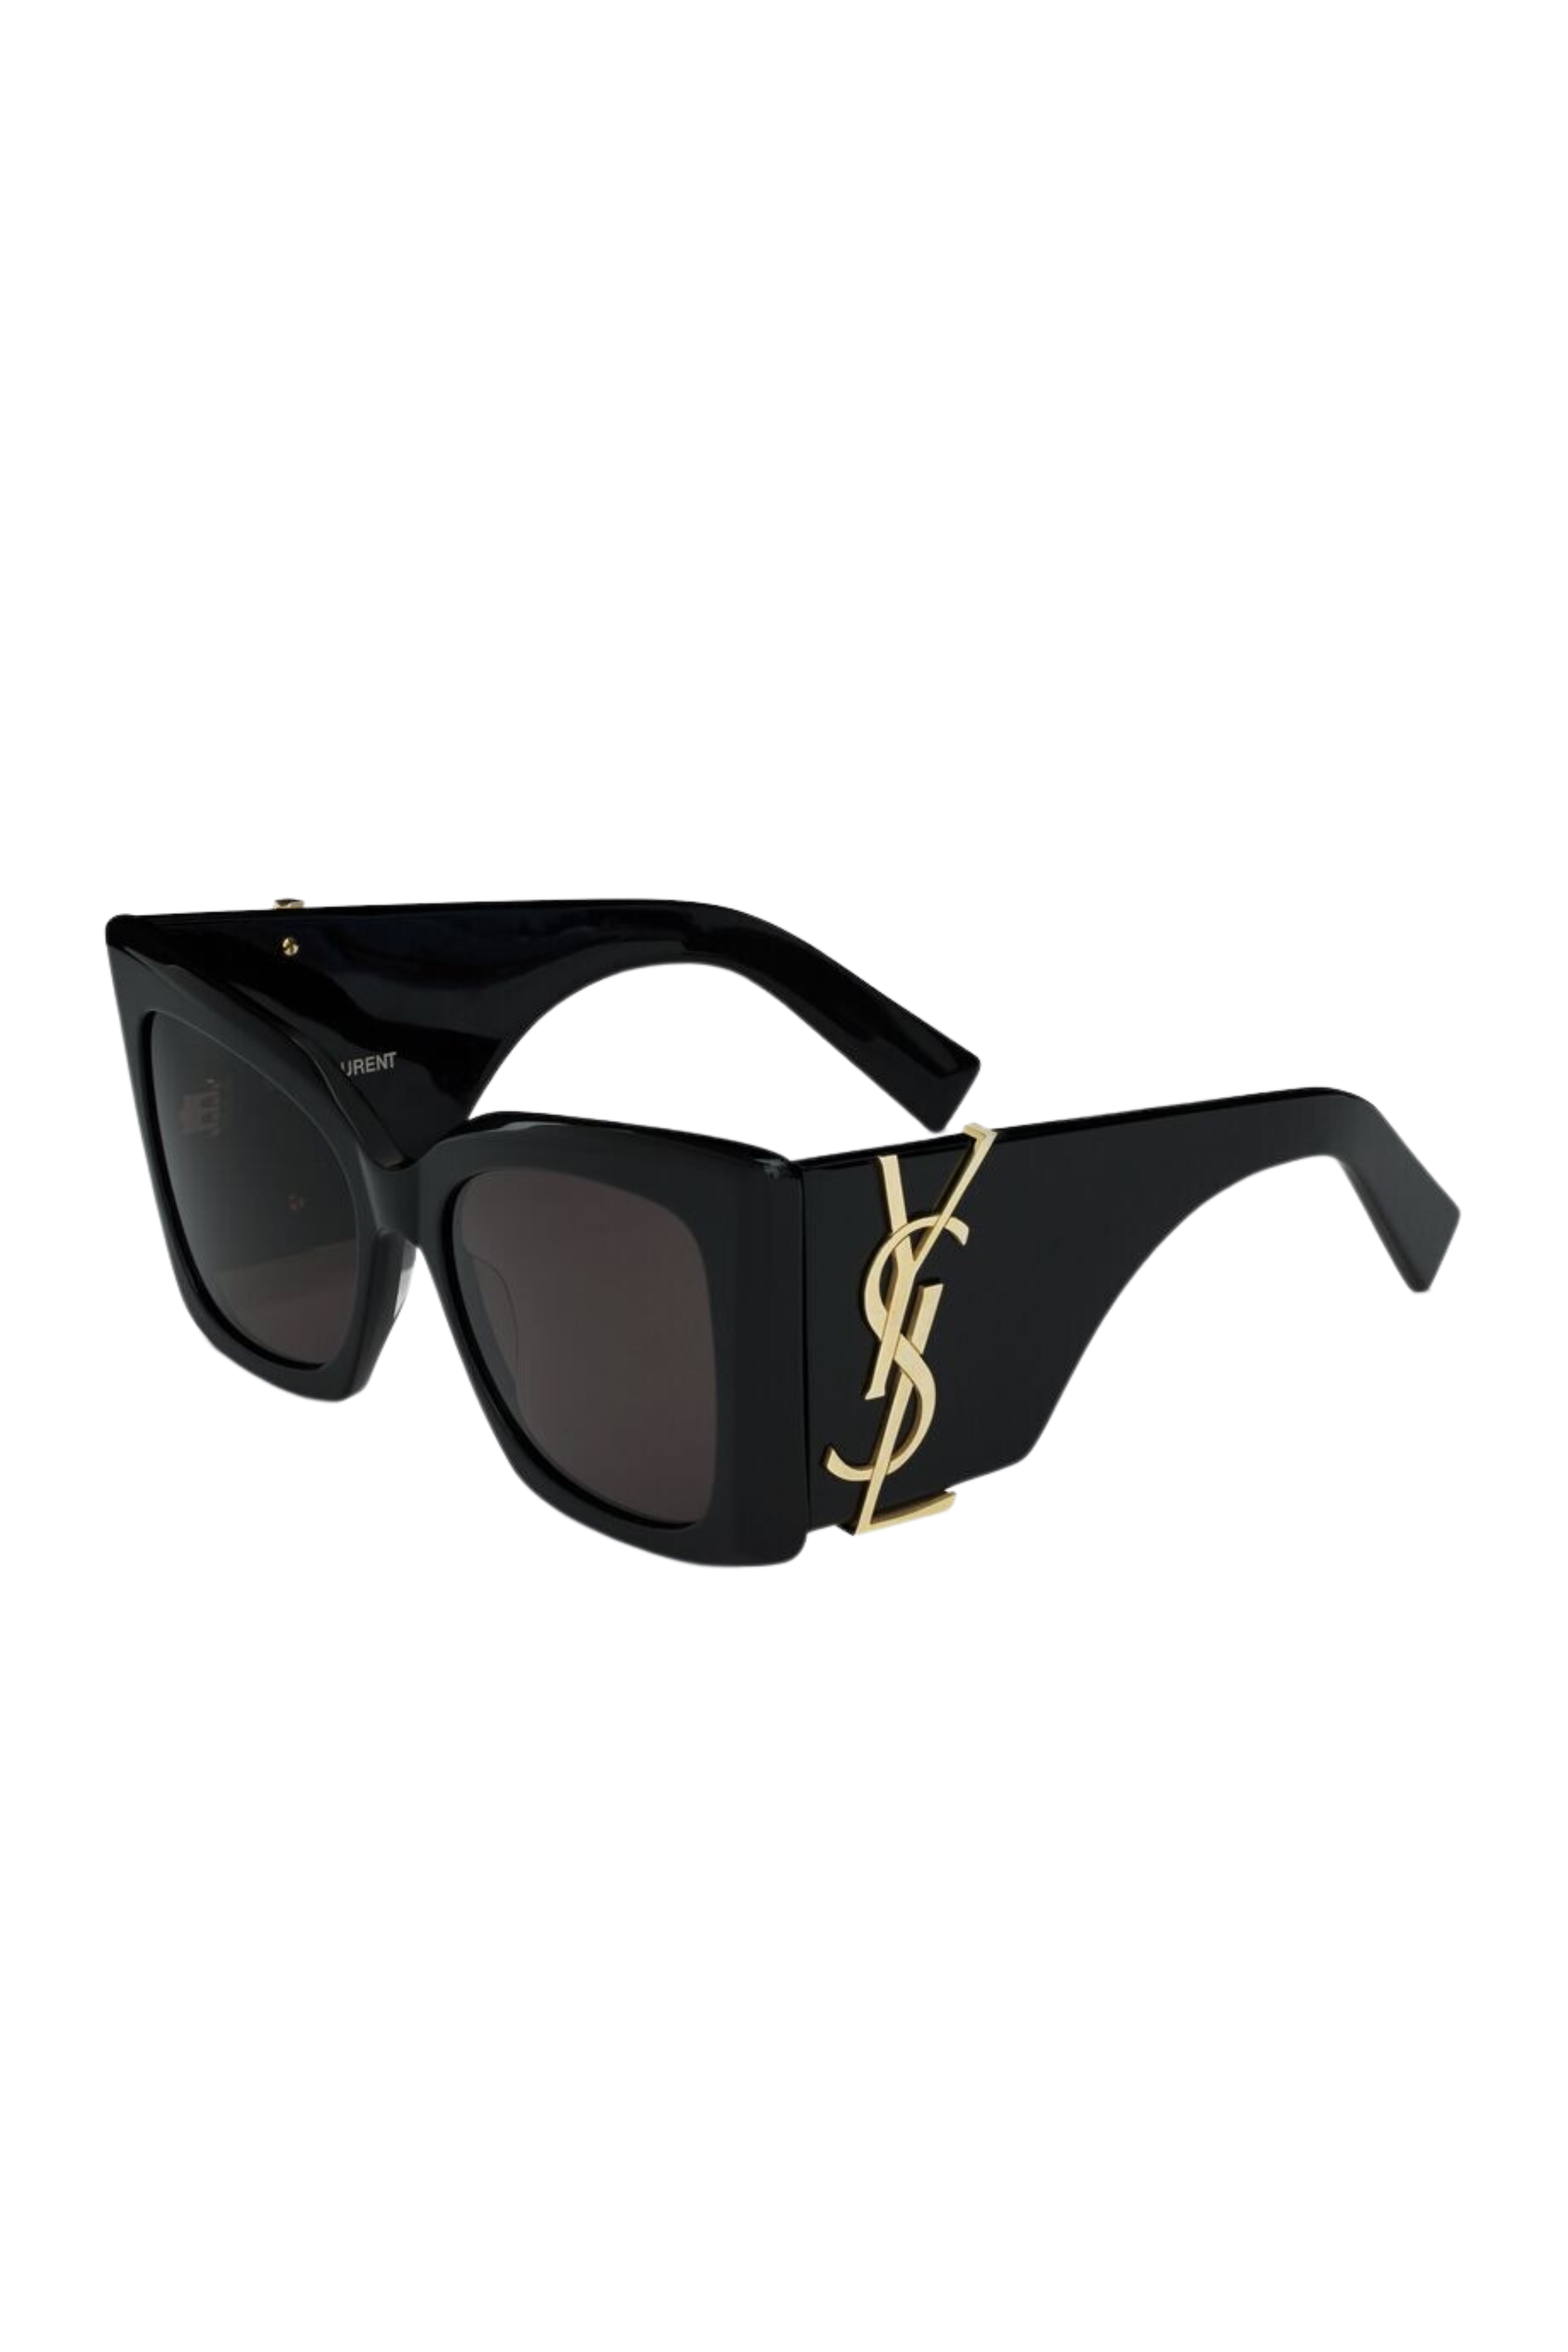 Saint Laurent Blaze Sunglasses